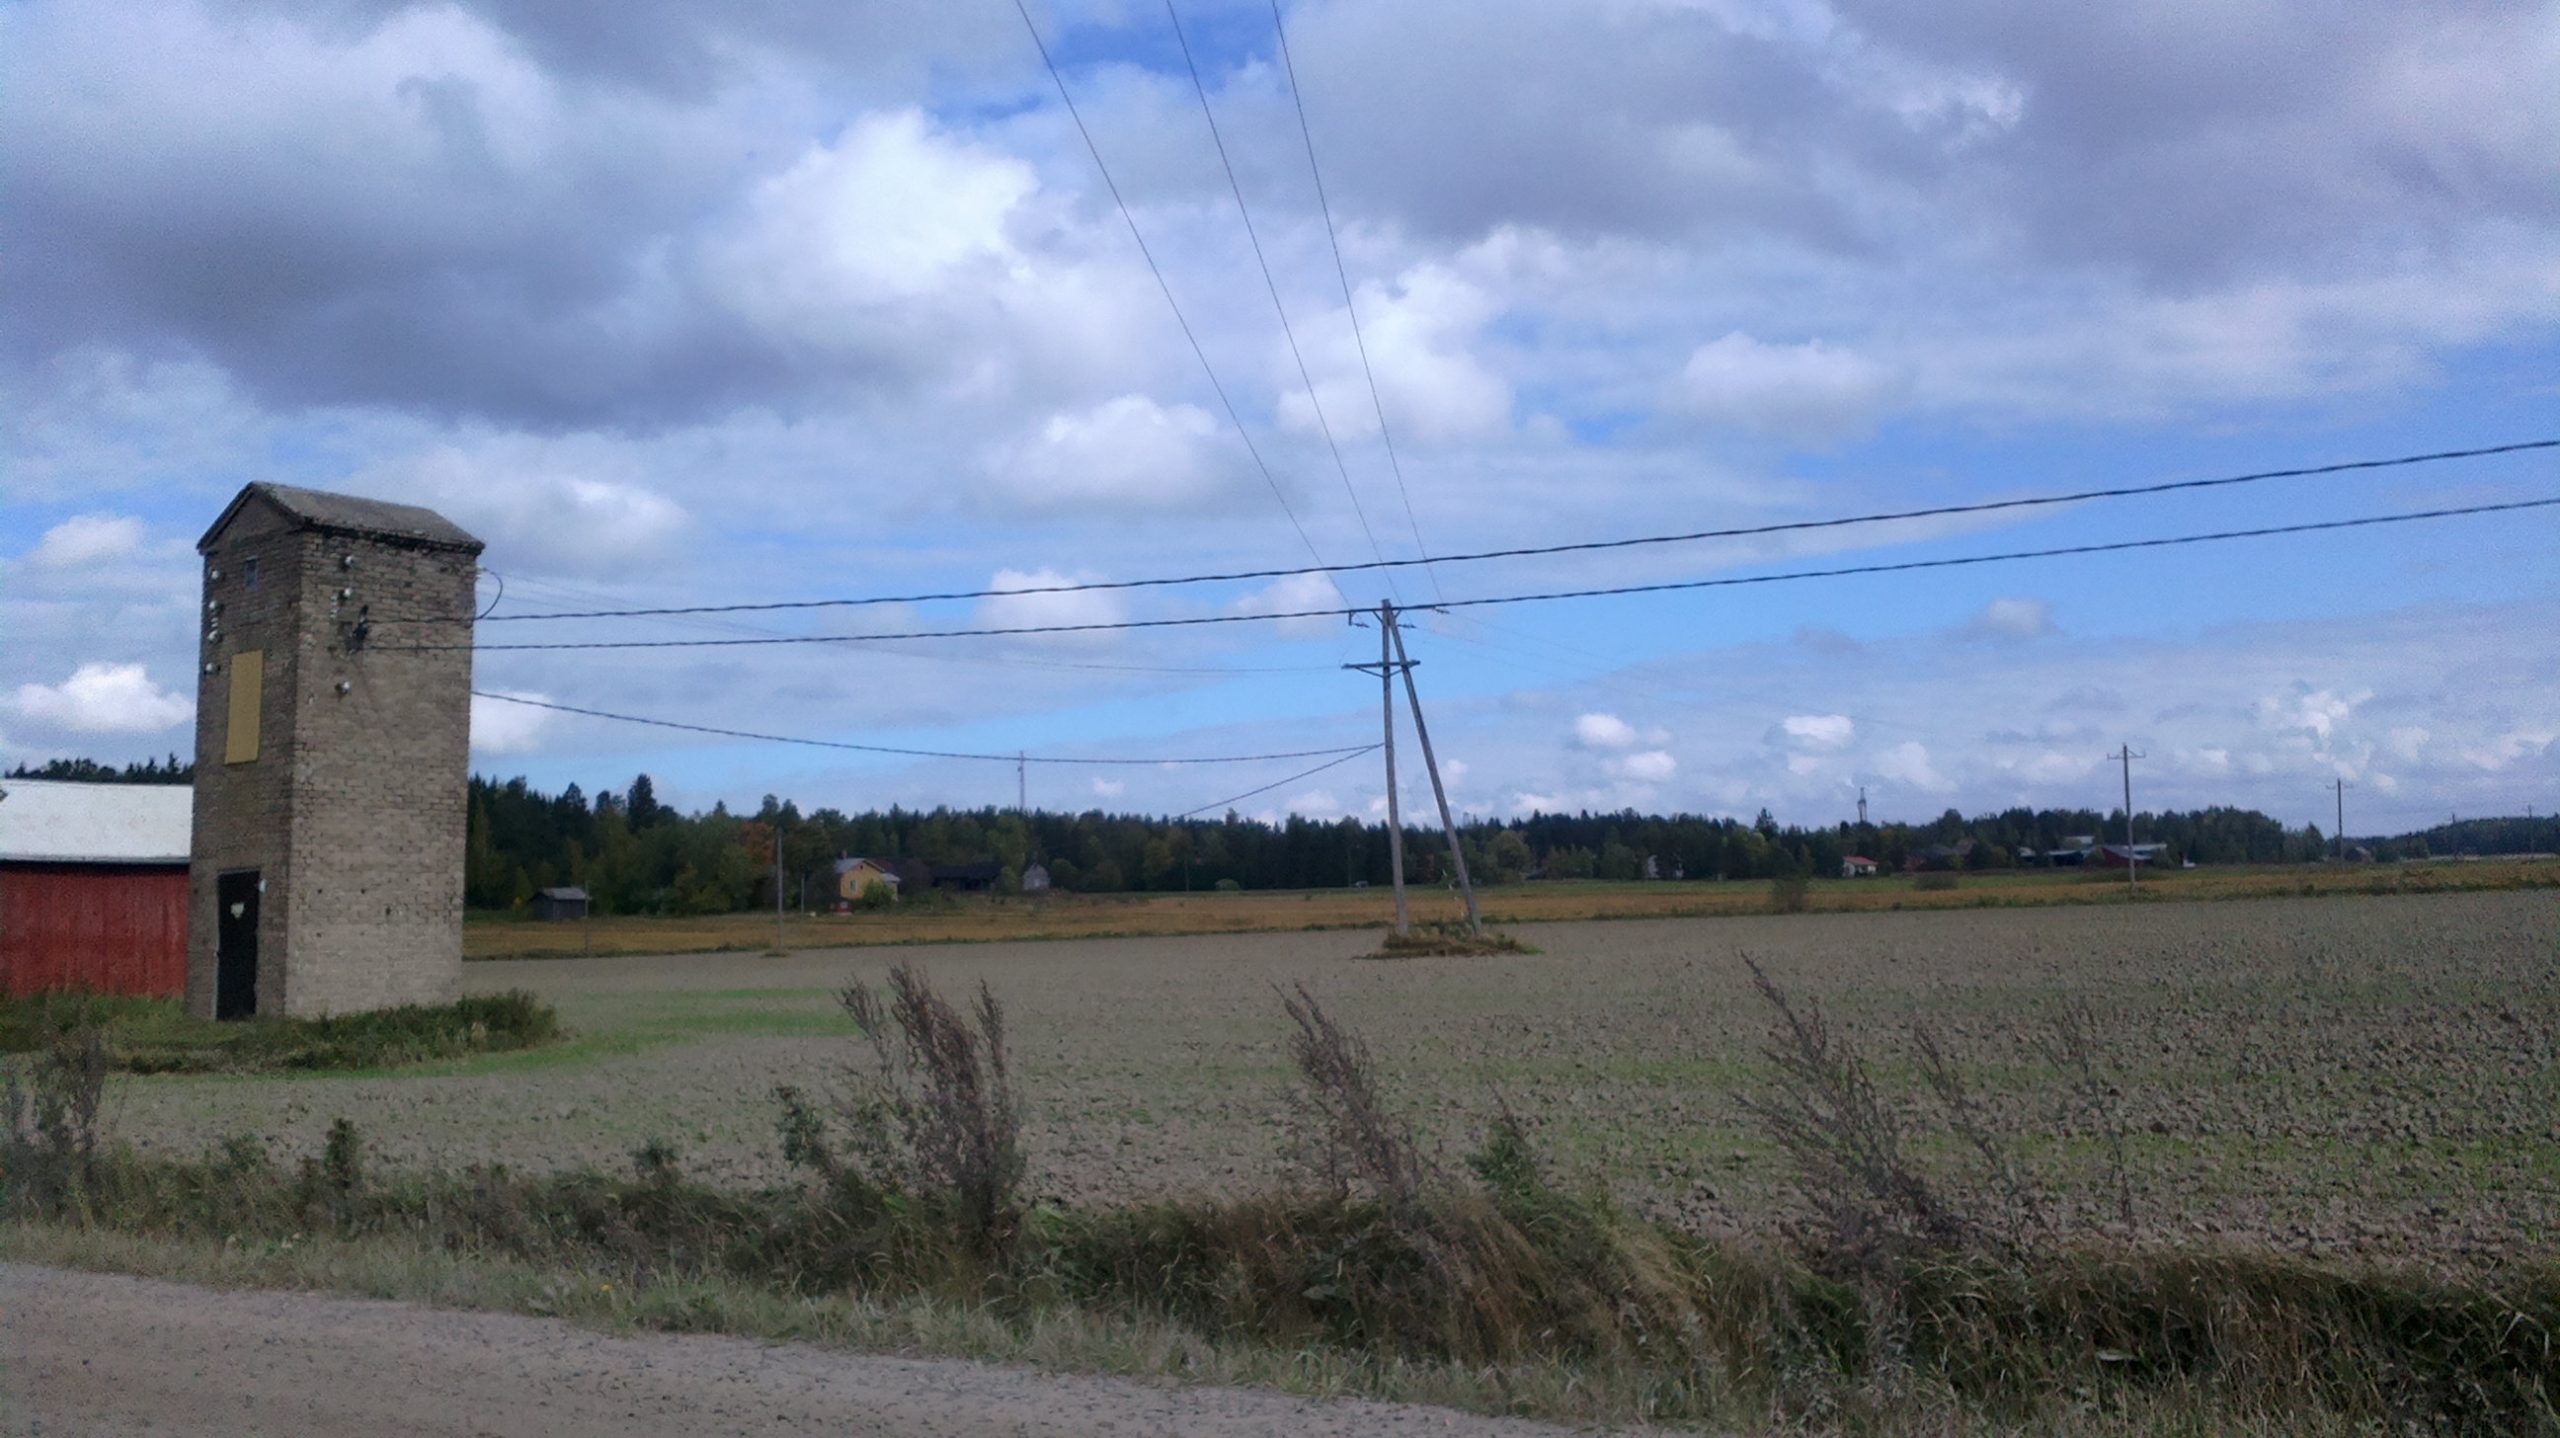 Kuvassa on pelto, jonka vasemmassa laidassa on sähkökeskus, tornimainen vaalea rakennus. Keskuksesta lähtee useita sähkökaapeleita ja sekä pellolla että pellon laidassa on useita puisia sähkötolppia.